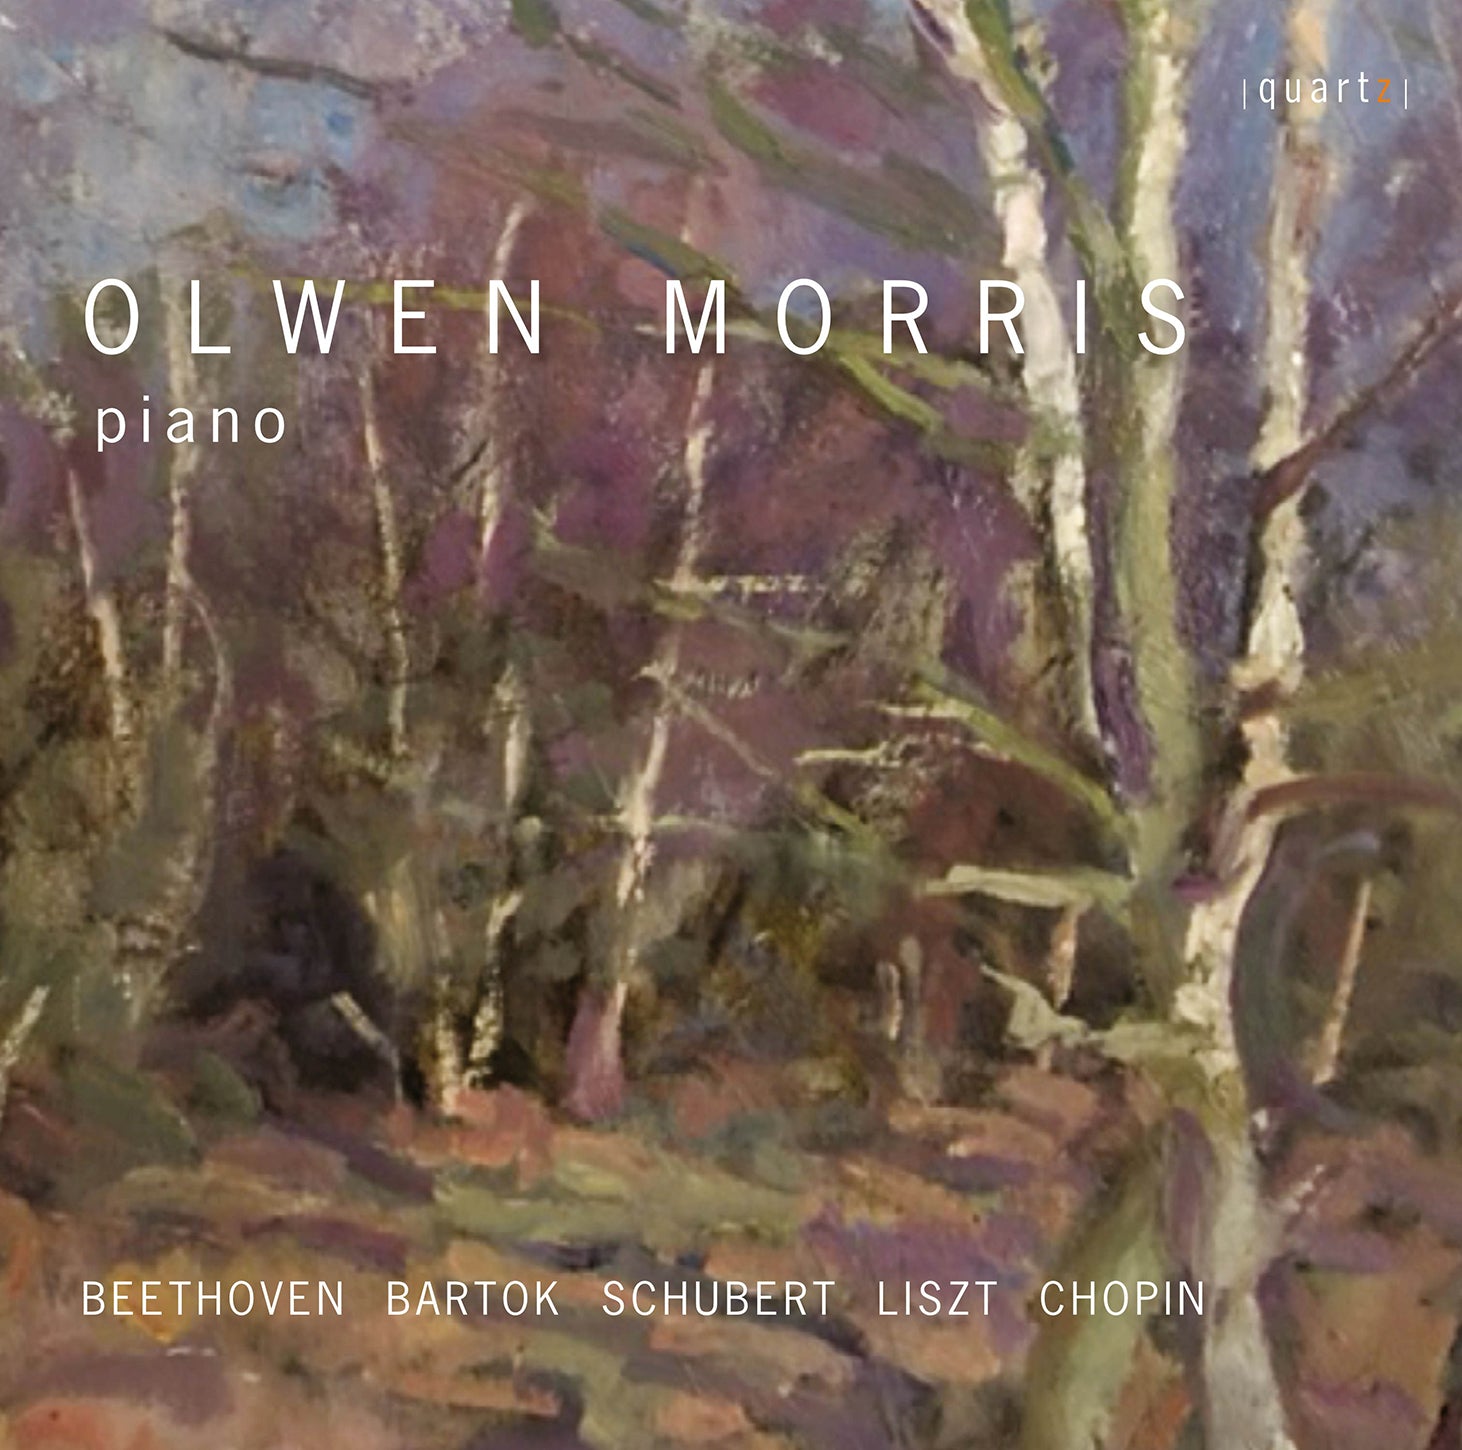 Olwen Morris Plays Beethoven, Bartók, Schubert, Liszt & Chopin